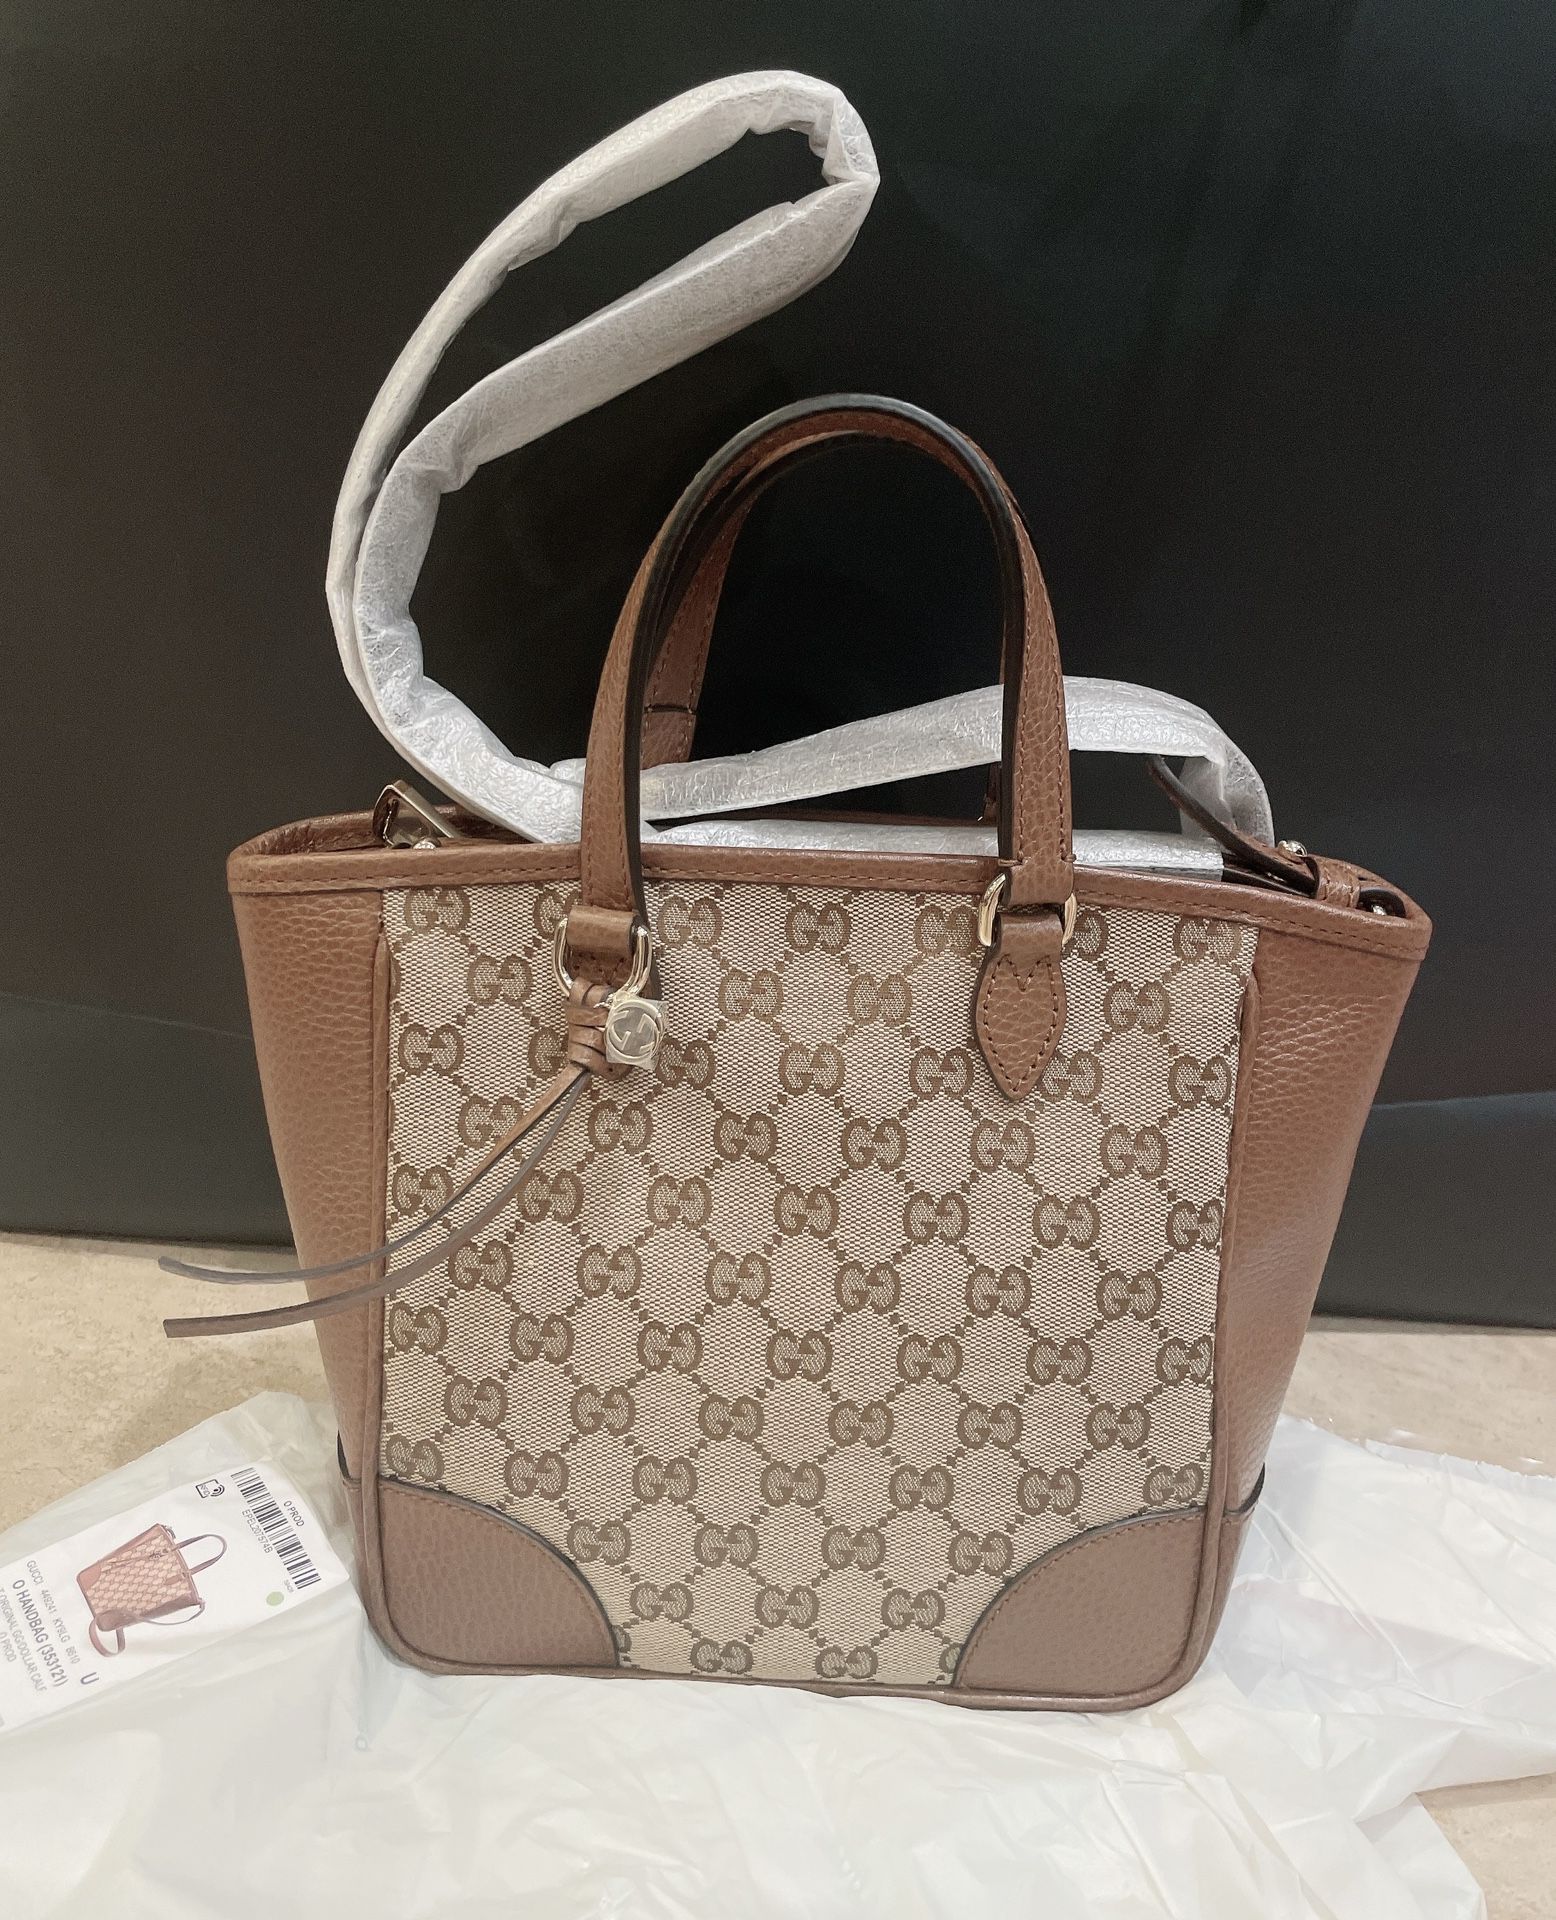 New- Gucci Tote Bag / Small Size 